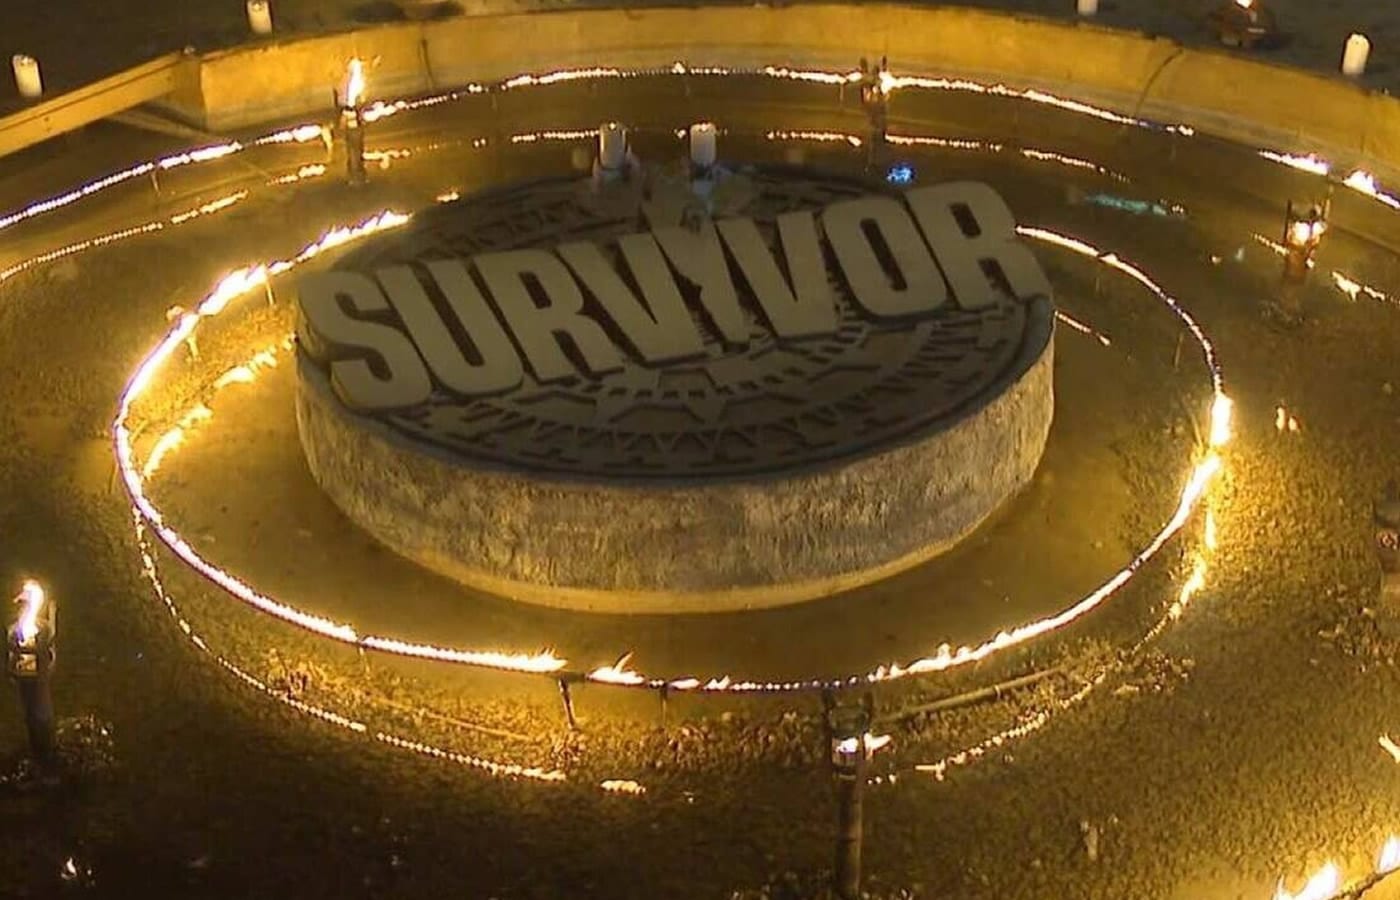 Τα νεύρα είναι τεντωμένα στο Survivor All Star και αυτό δεν αφορά Μόνο τον ηλιακό και τον Τάκη Καραγκούνια, αφού σύμφωνα με το Survivor spoiler